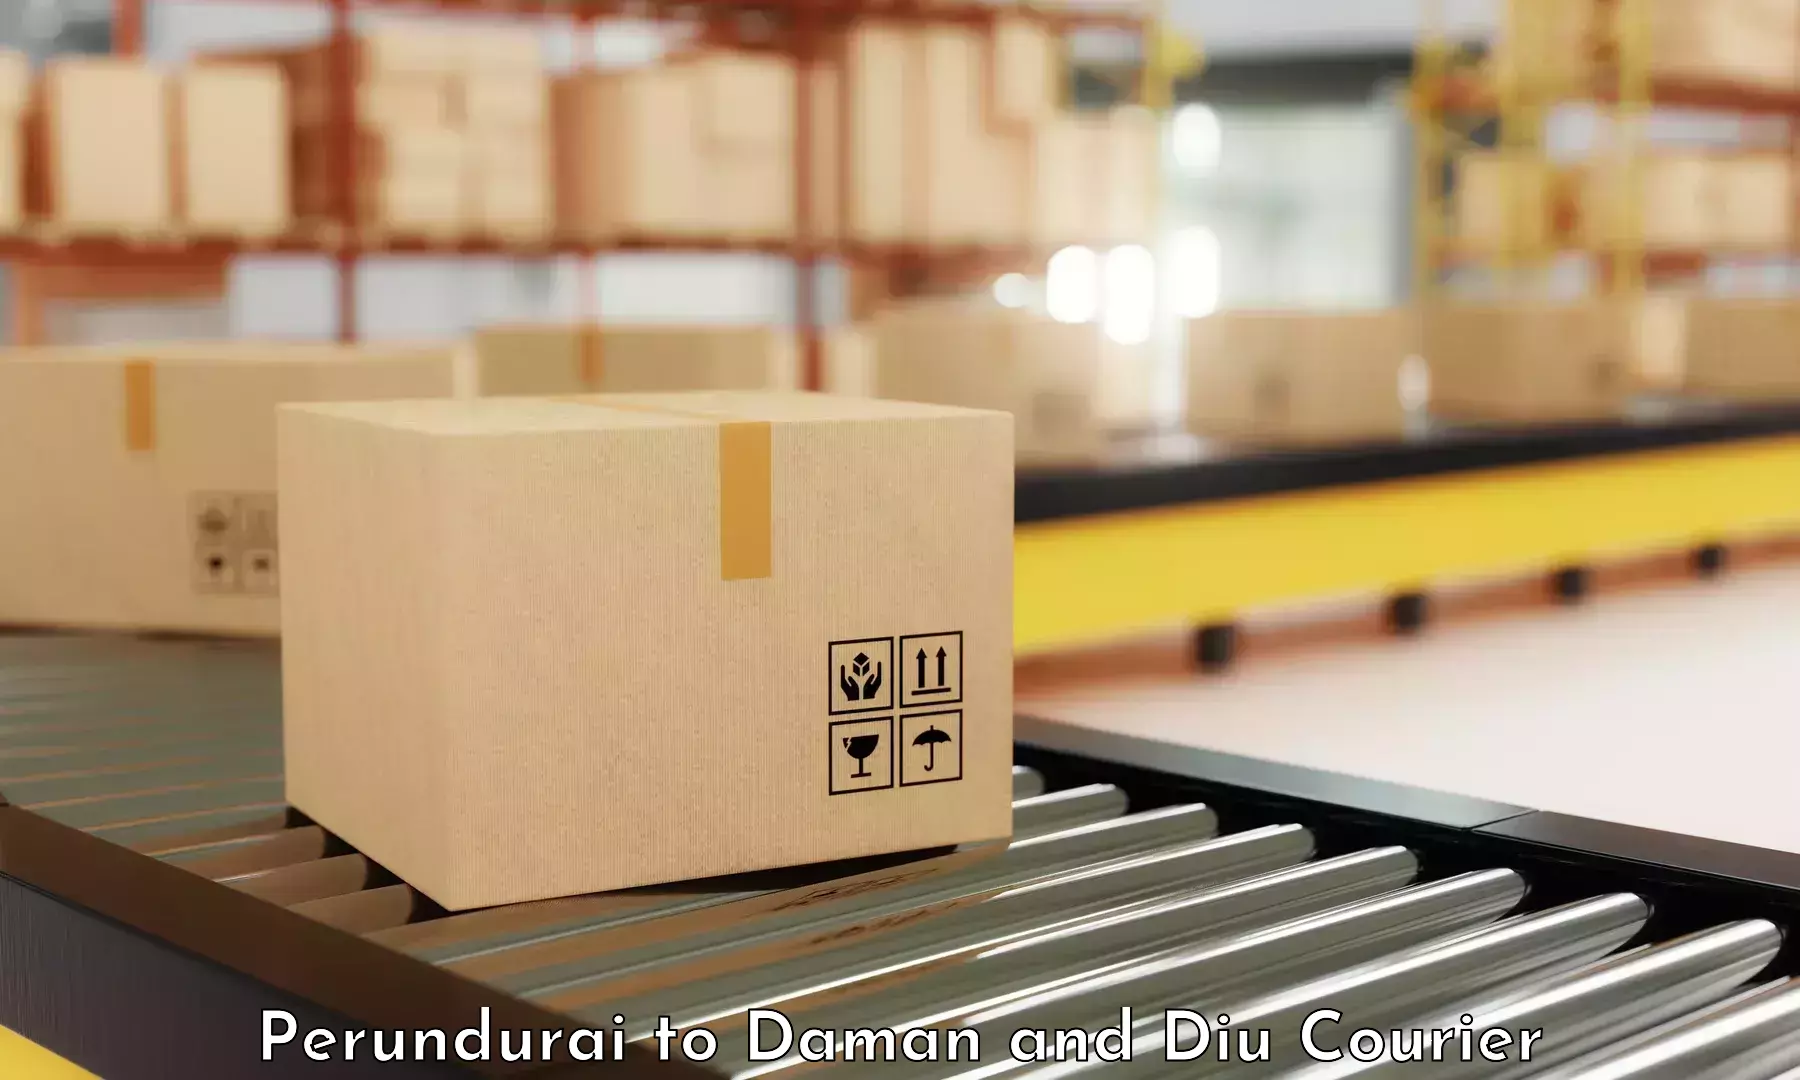 Advanced package delivery Perundurai to Diu